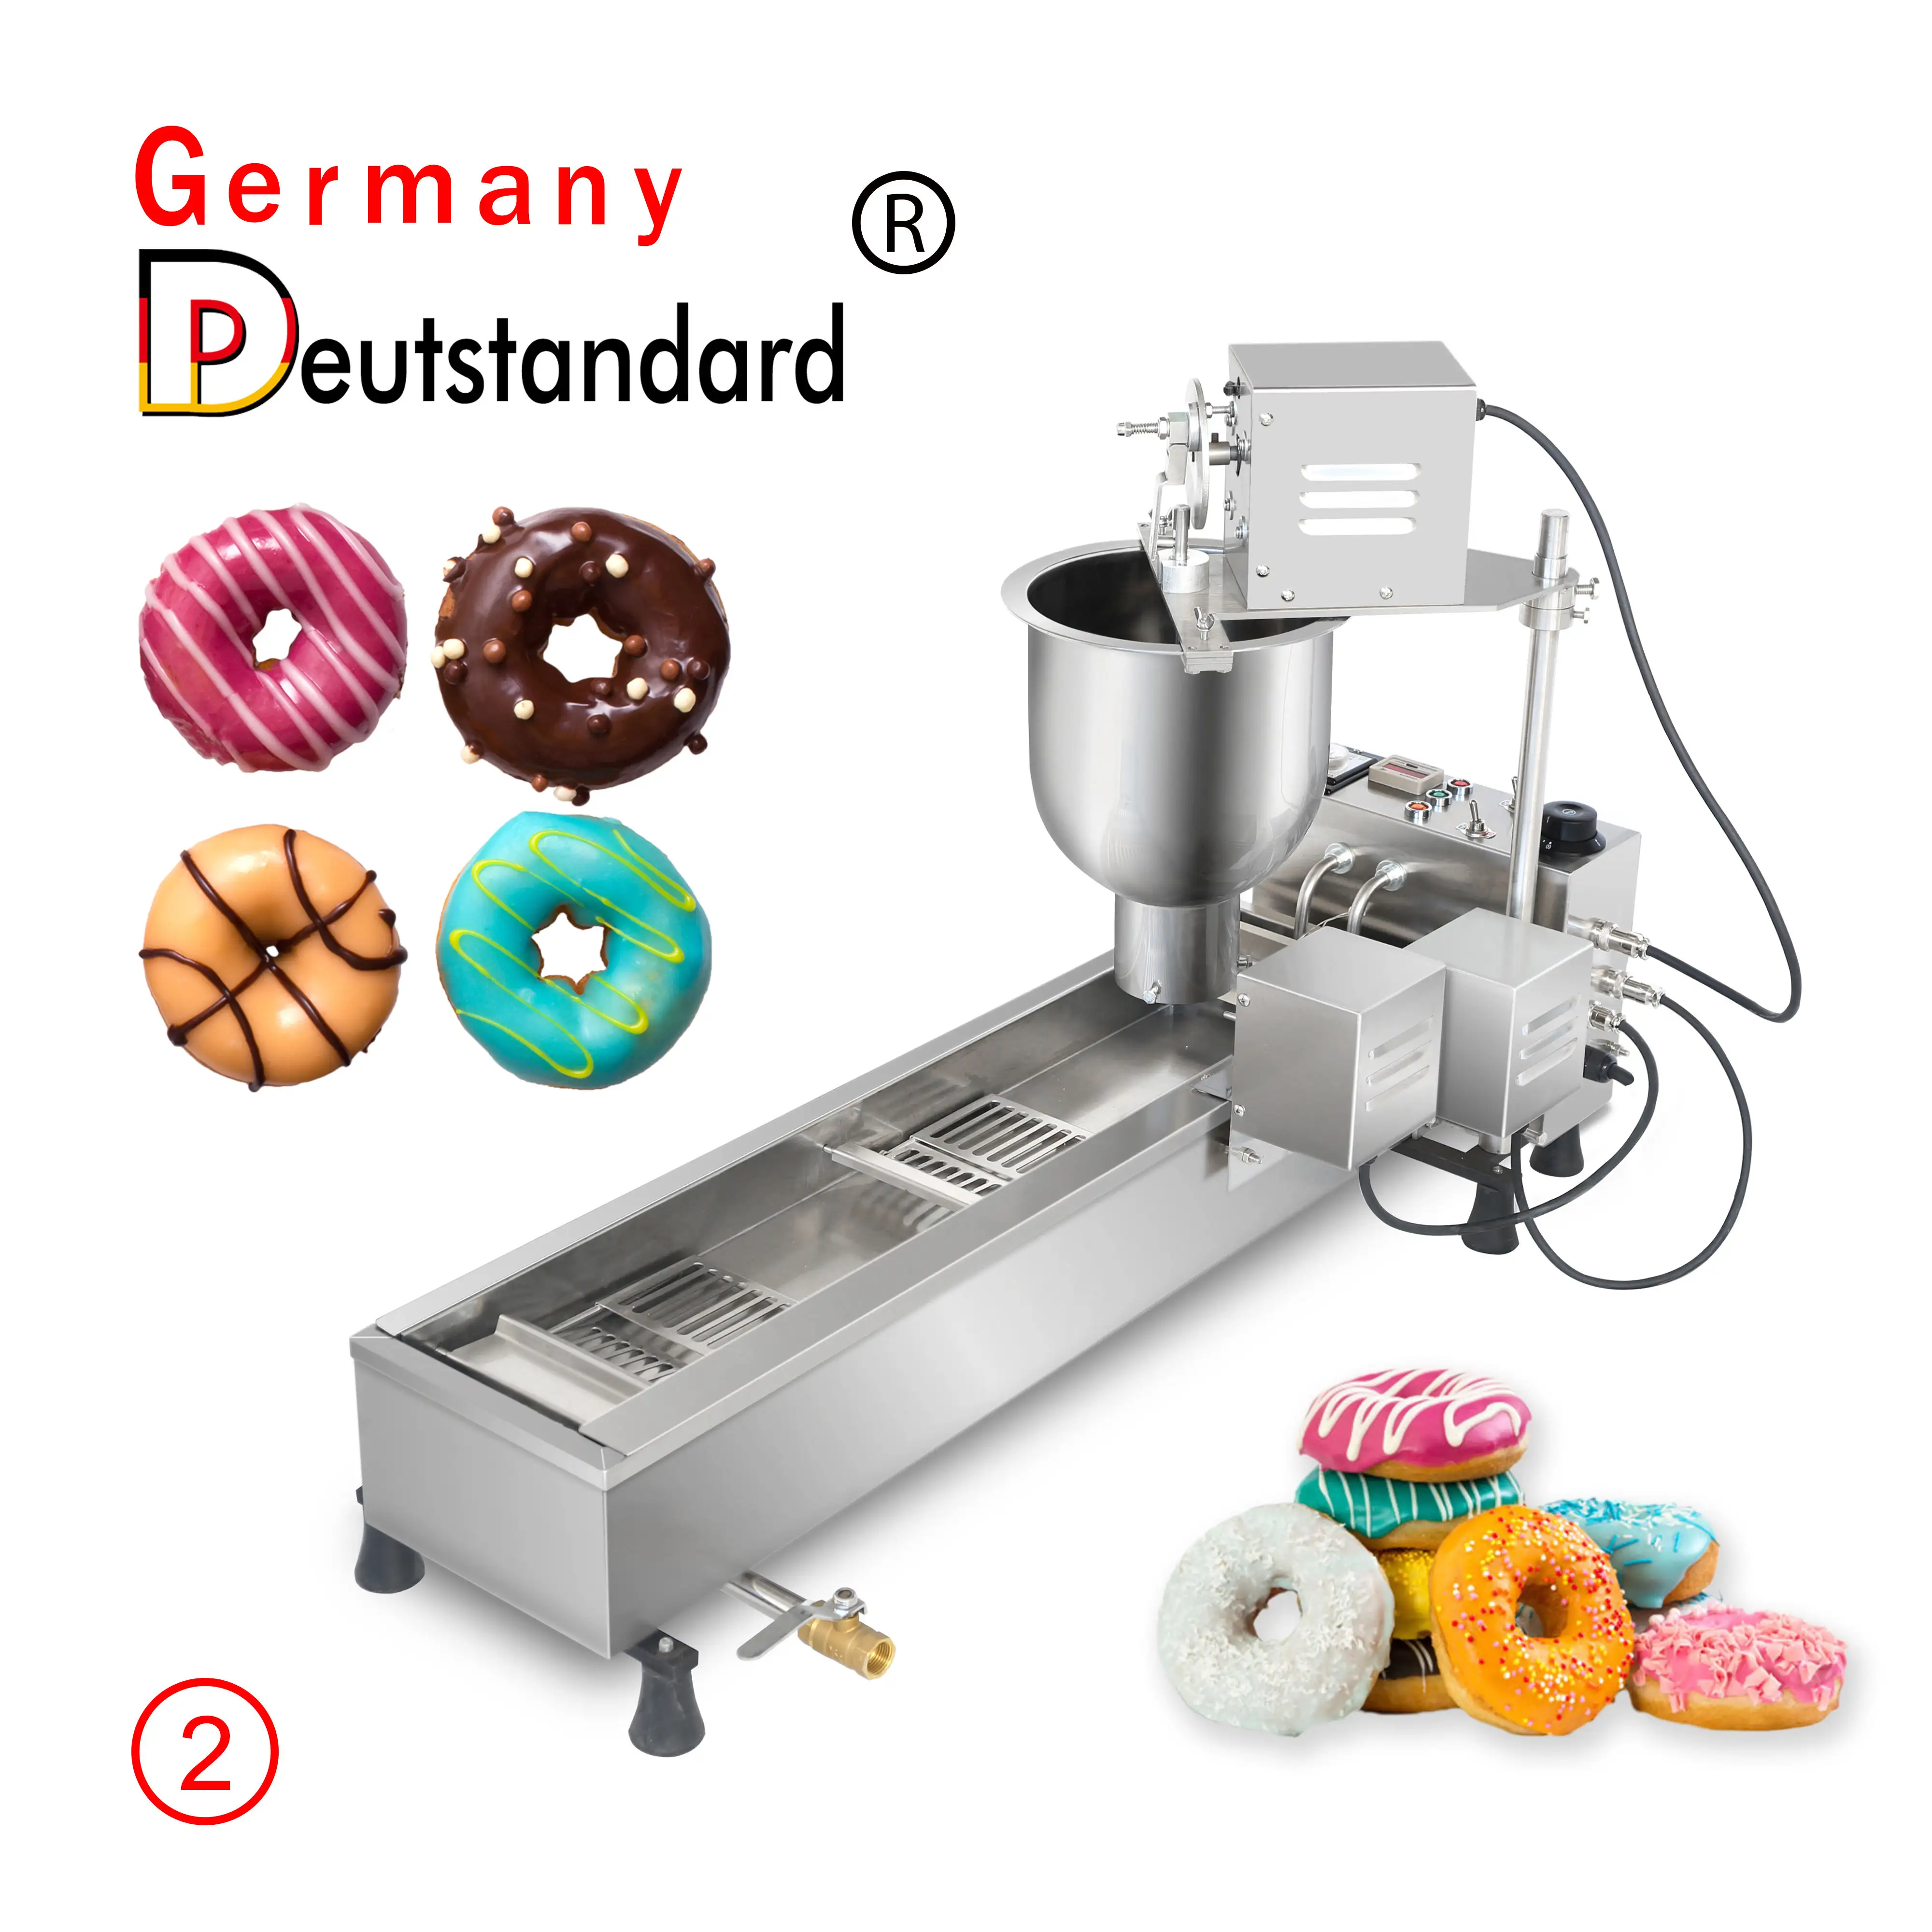 Germany Deutstandard NP-2 Mini Donut Maker Commercial 304 Stainless Steel 3 Sizes Donut Moulds Full-Automatic Doughnut Maker